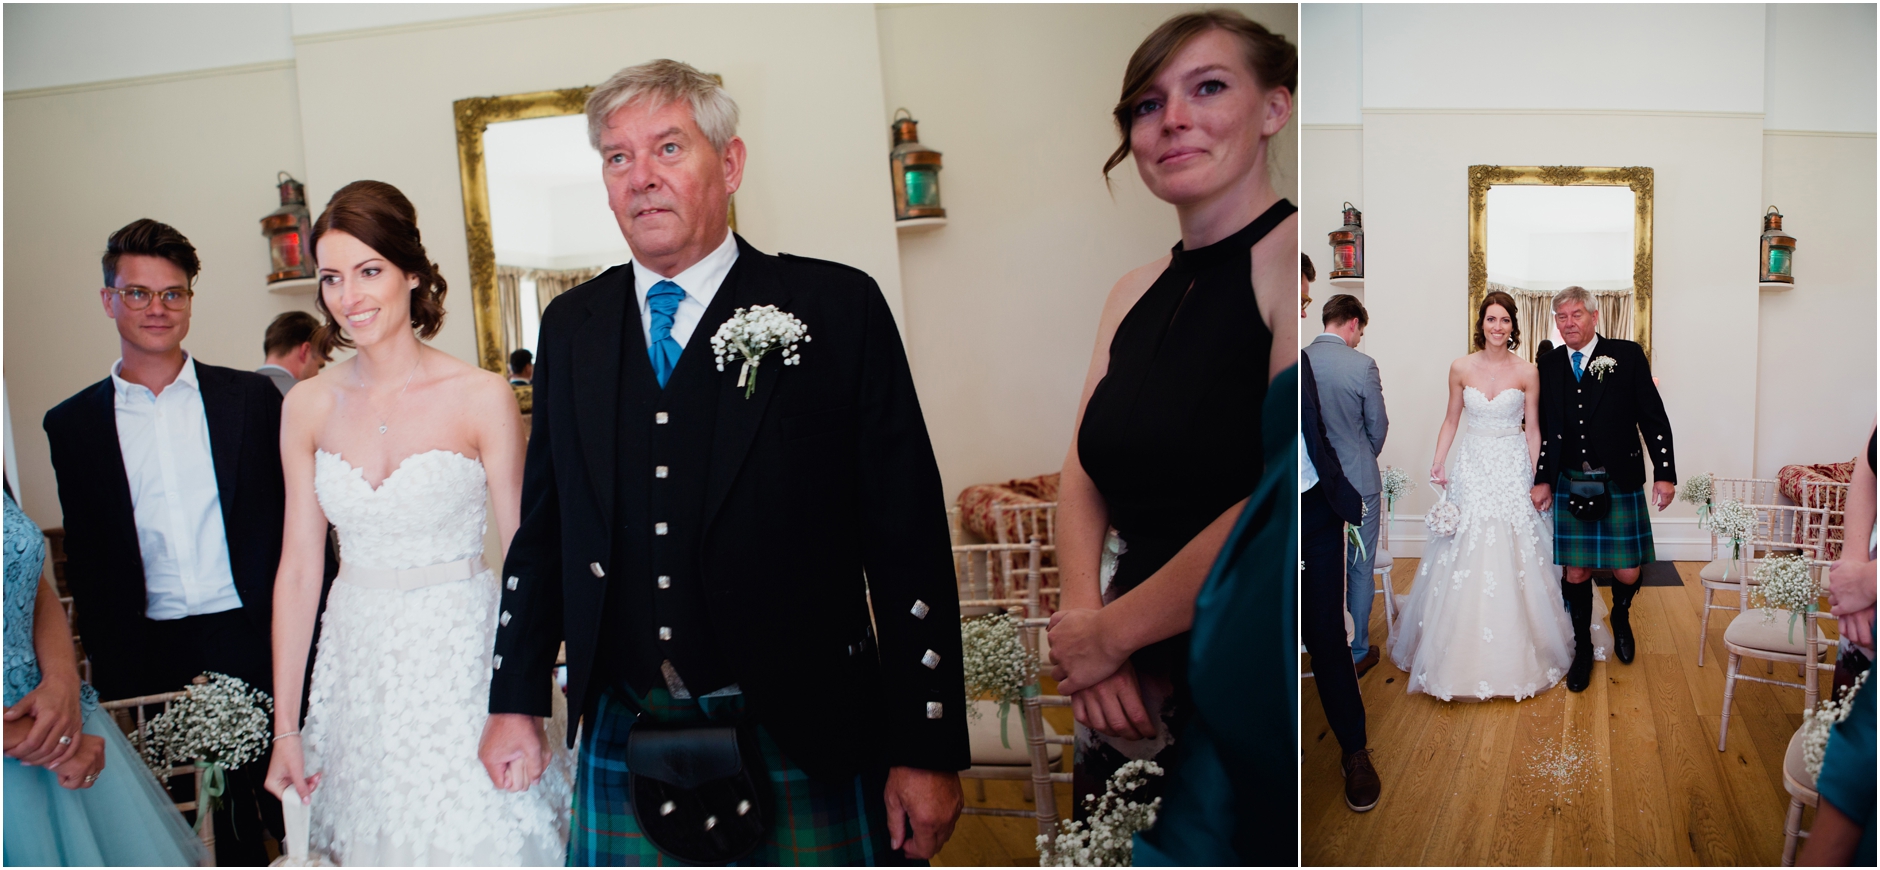 ntry house wedding photographer aberdeen highlands